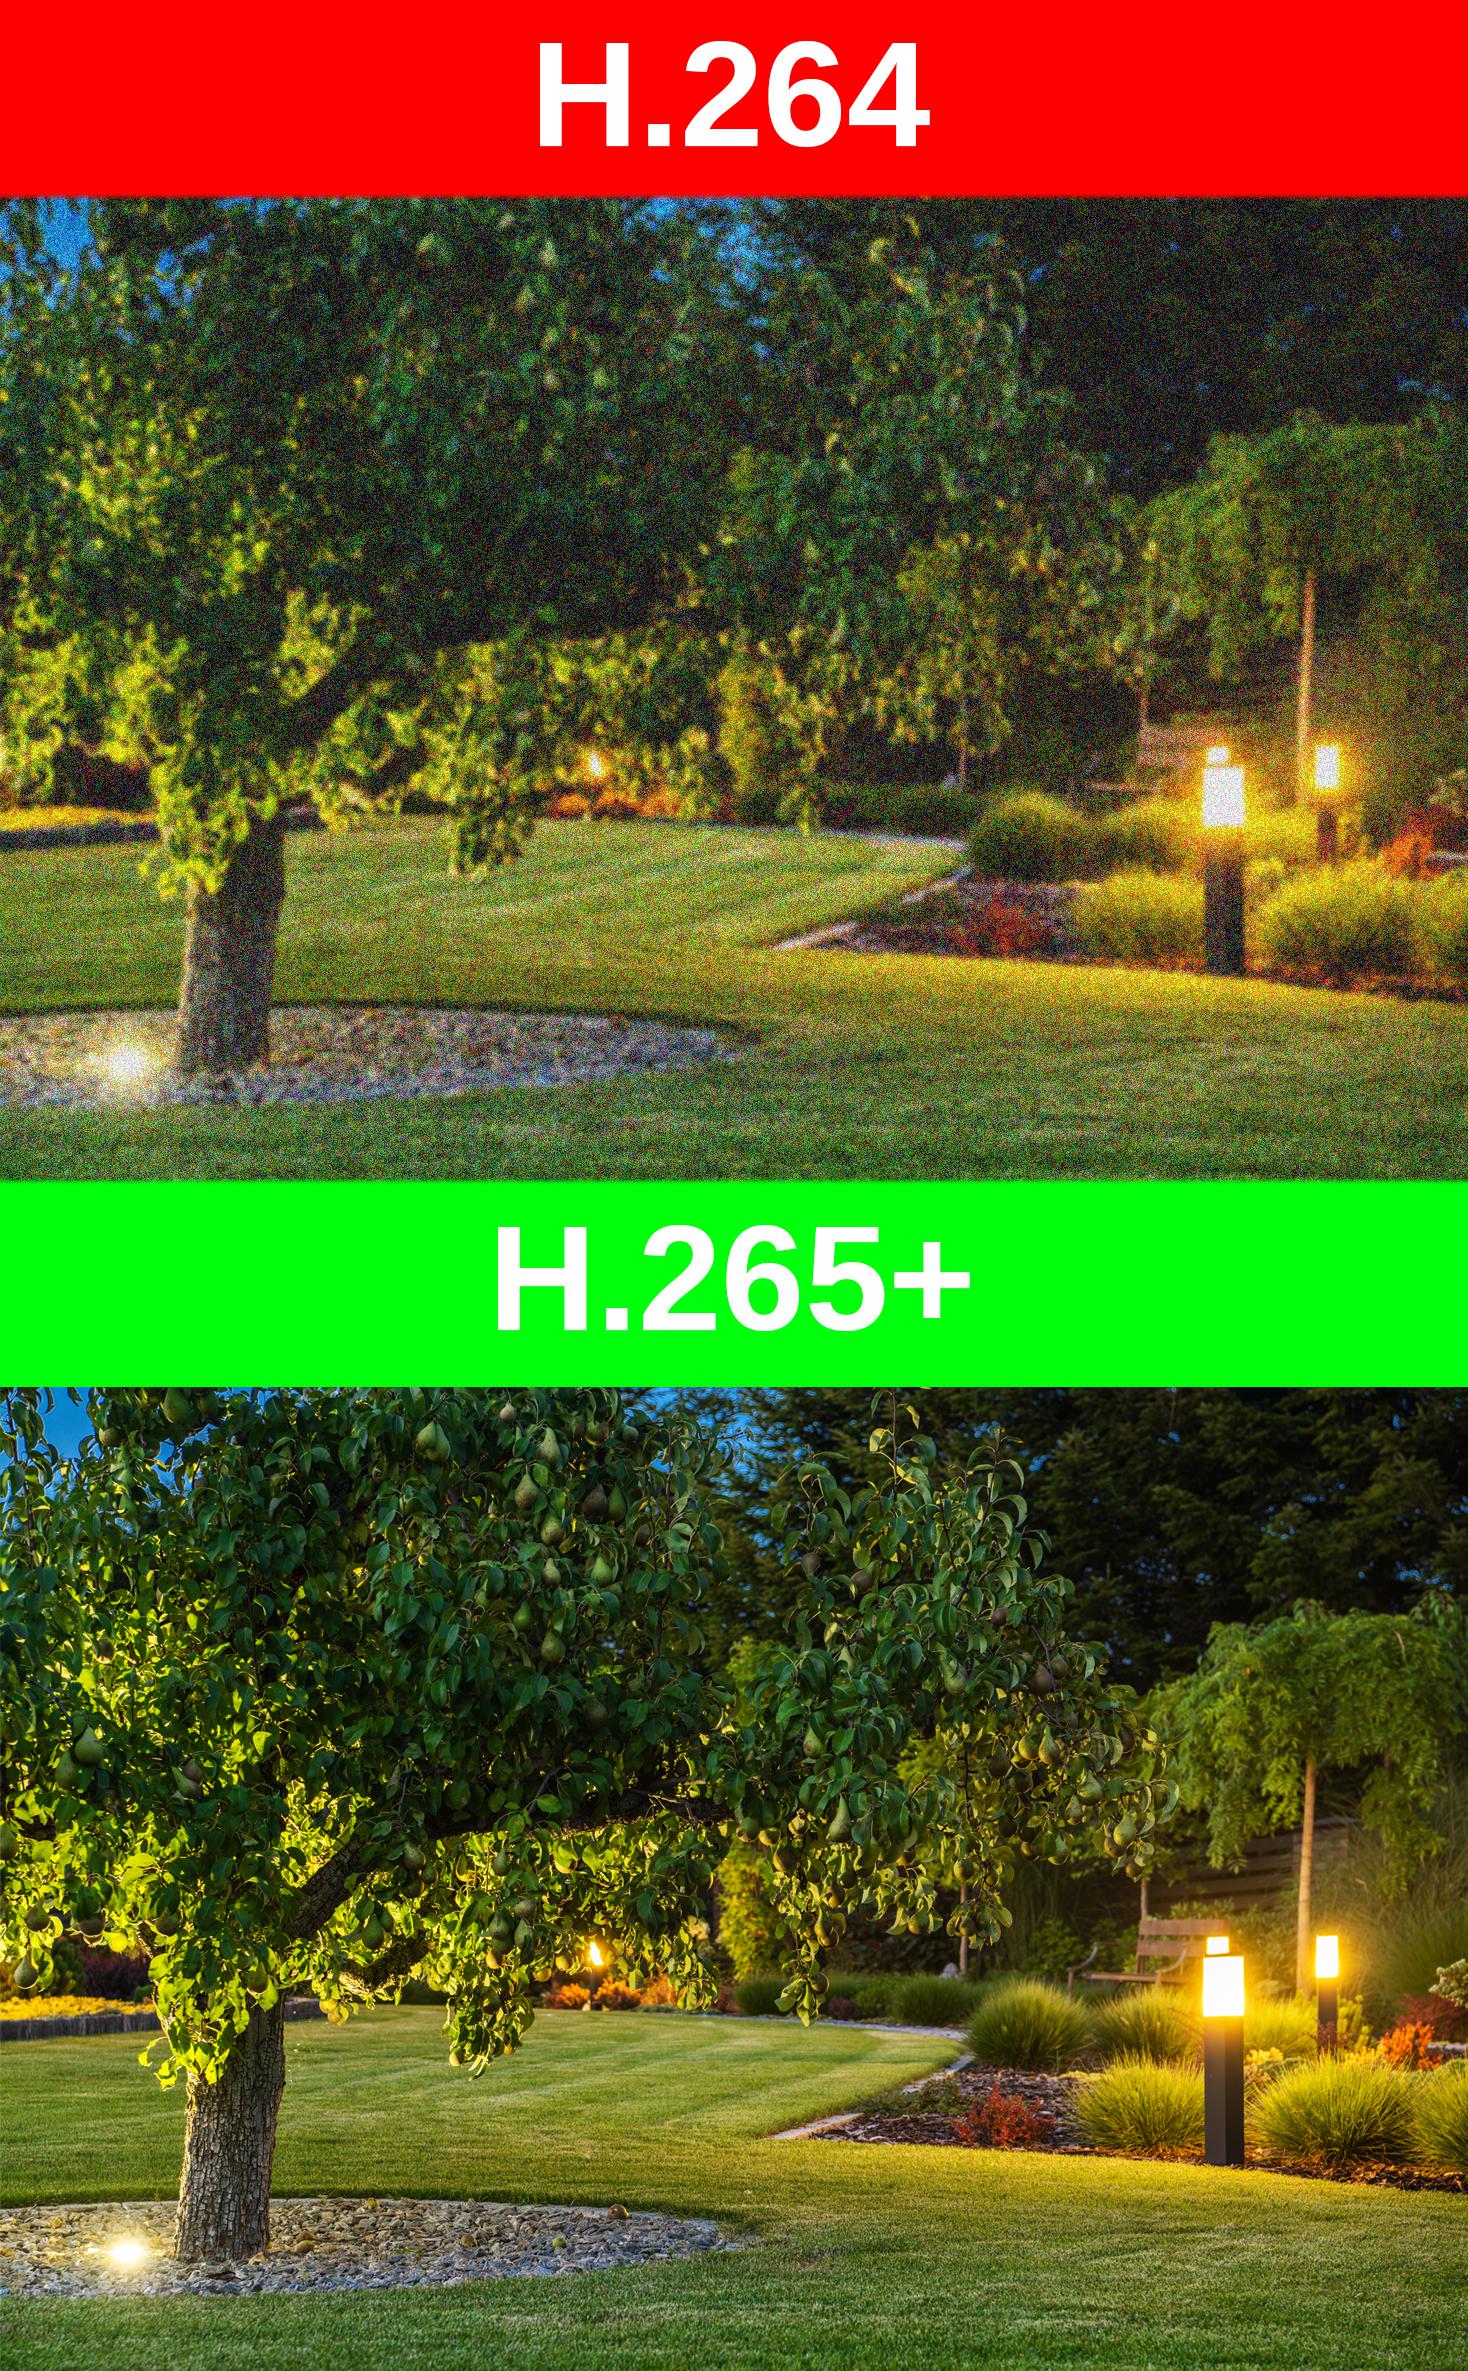 Inteligentny kodek Hikvision H.265+ - optymalizuj z jego pomocą funkcje kamery IP PTZ 4MPx PTZ-C4MP HiLook by Hikvision